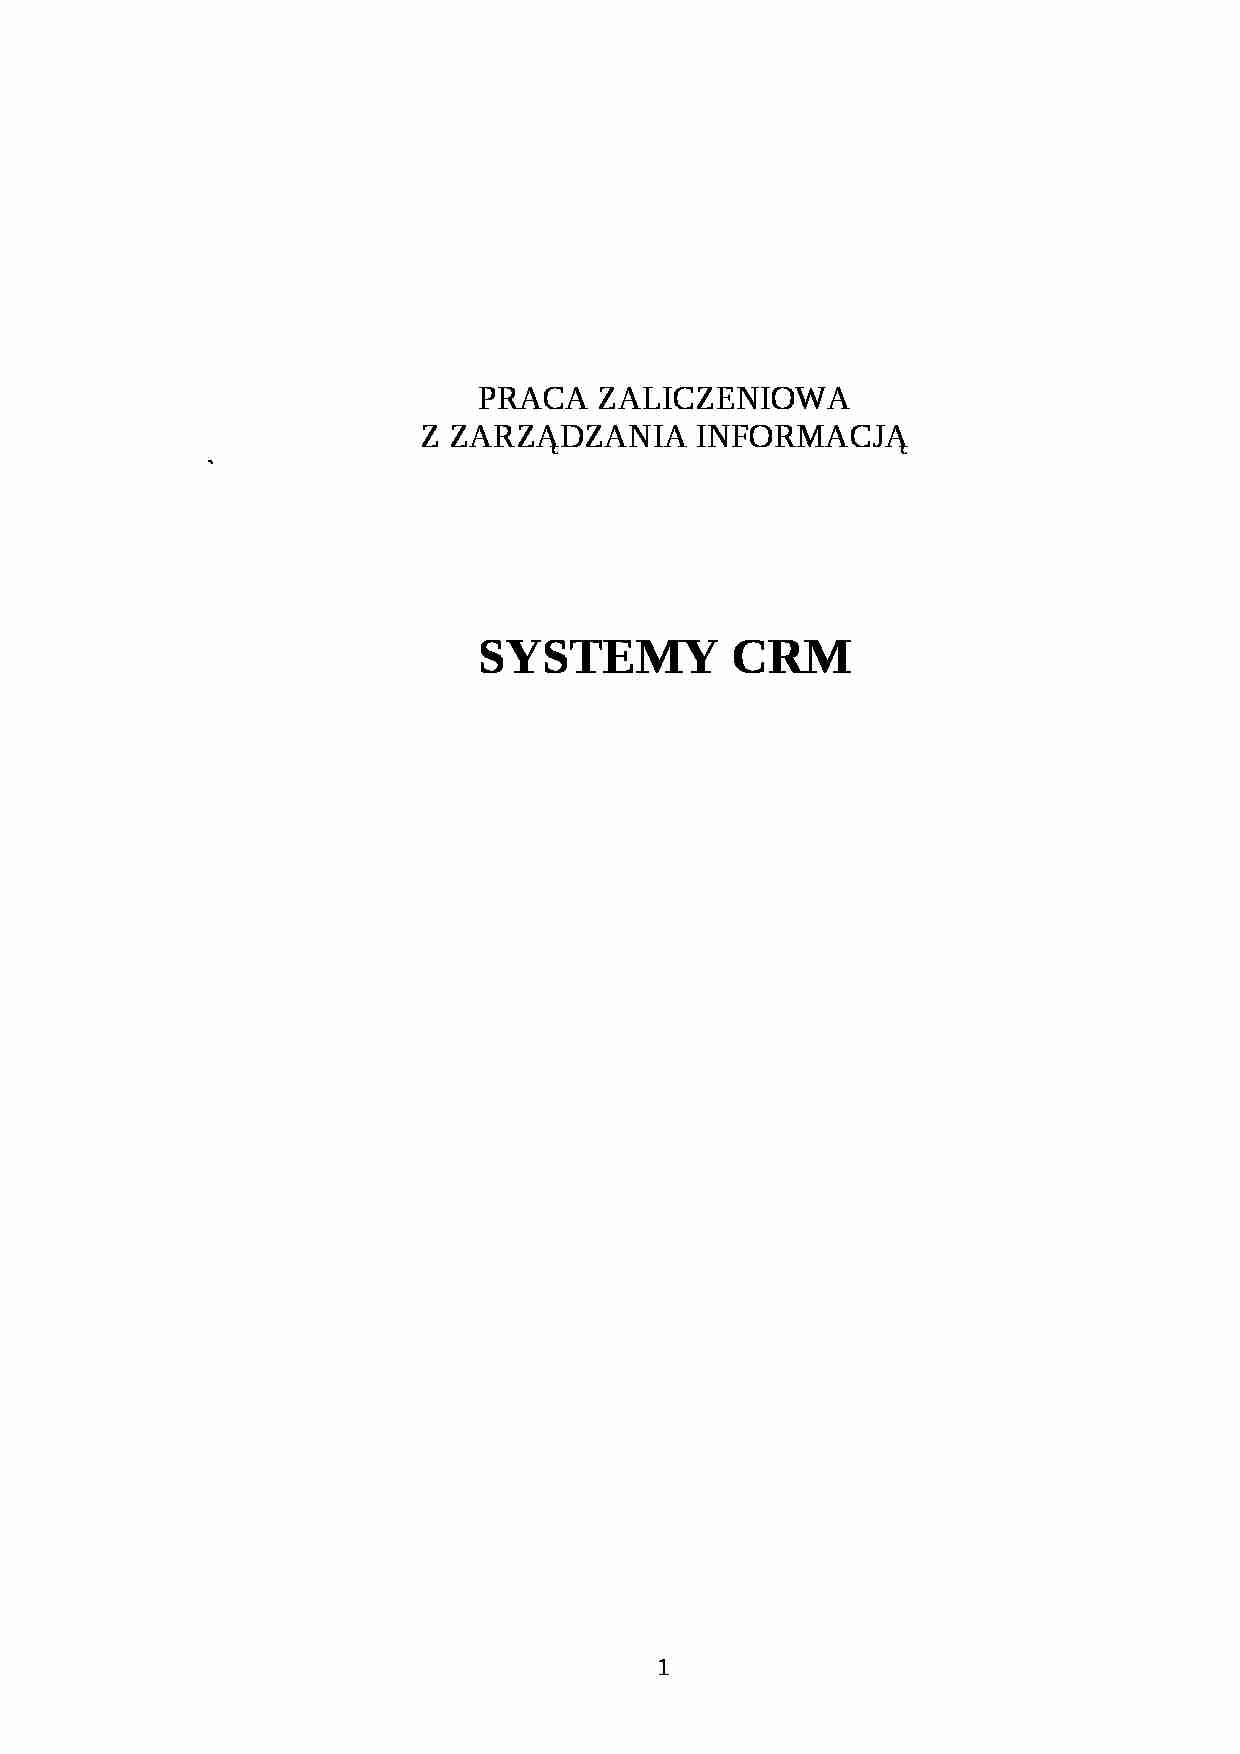 Systemy CRM - definicja, sposób działania - strona 1